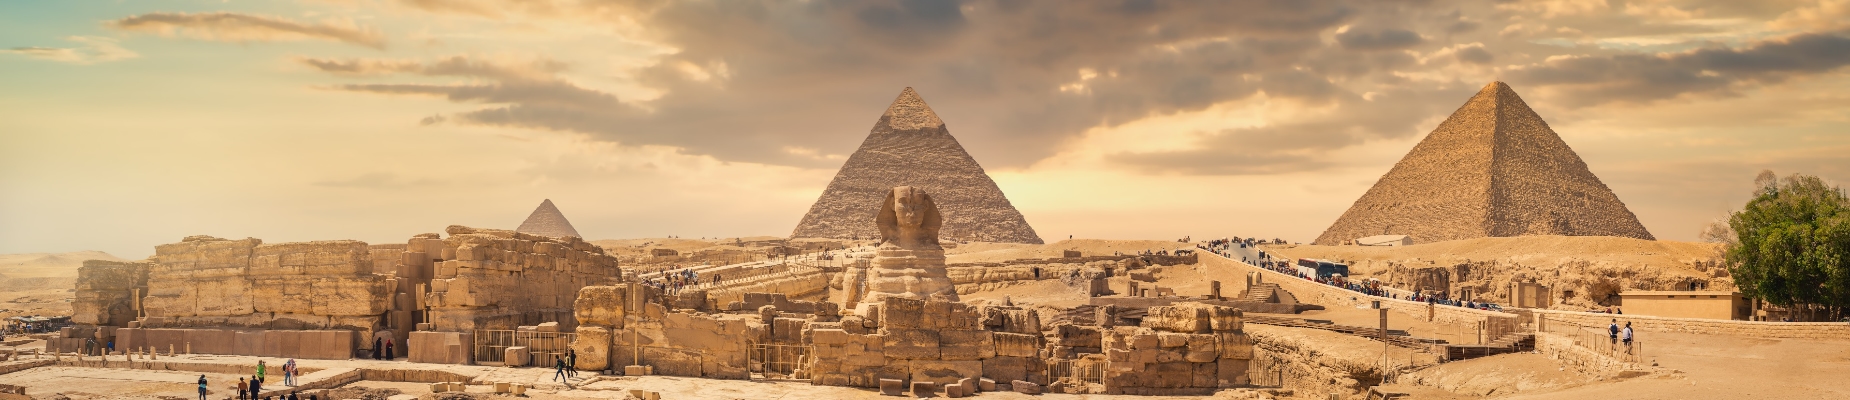 Piramide Egypte